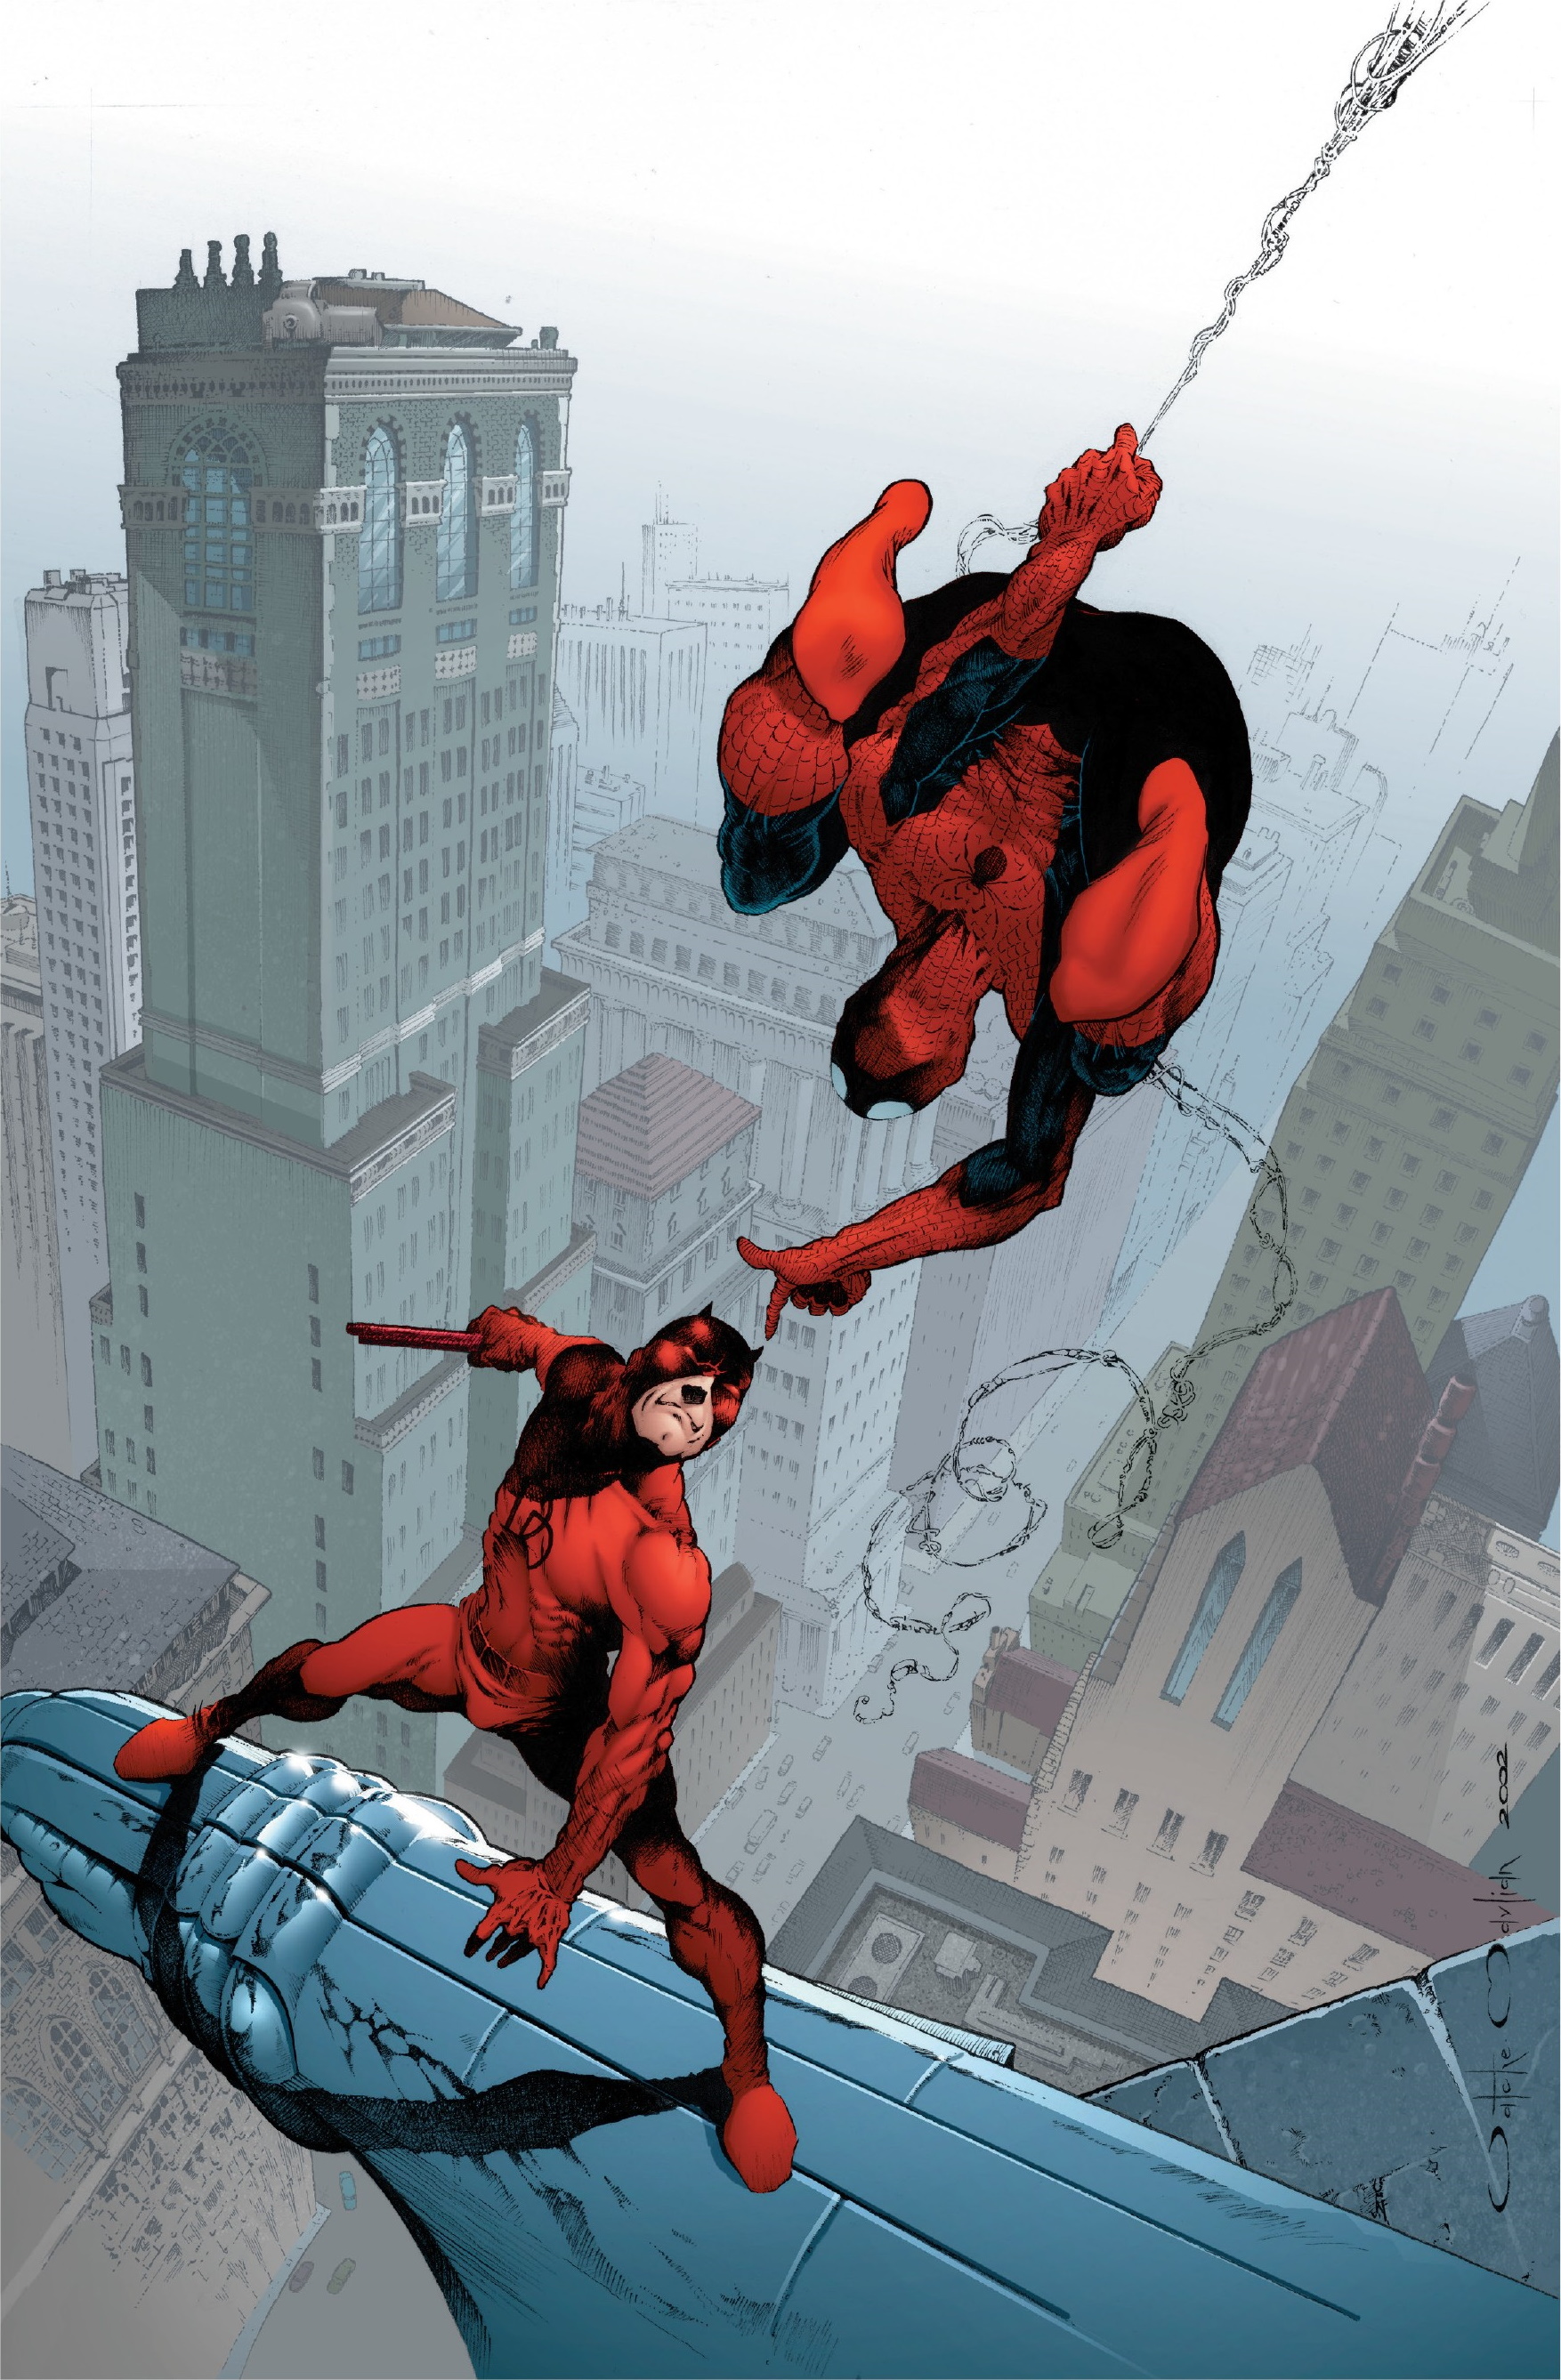 Spider-Man/Daredevil Vol 1 1 | Marvel Database | Fandom